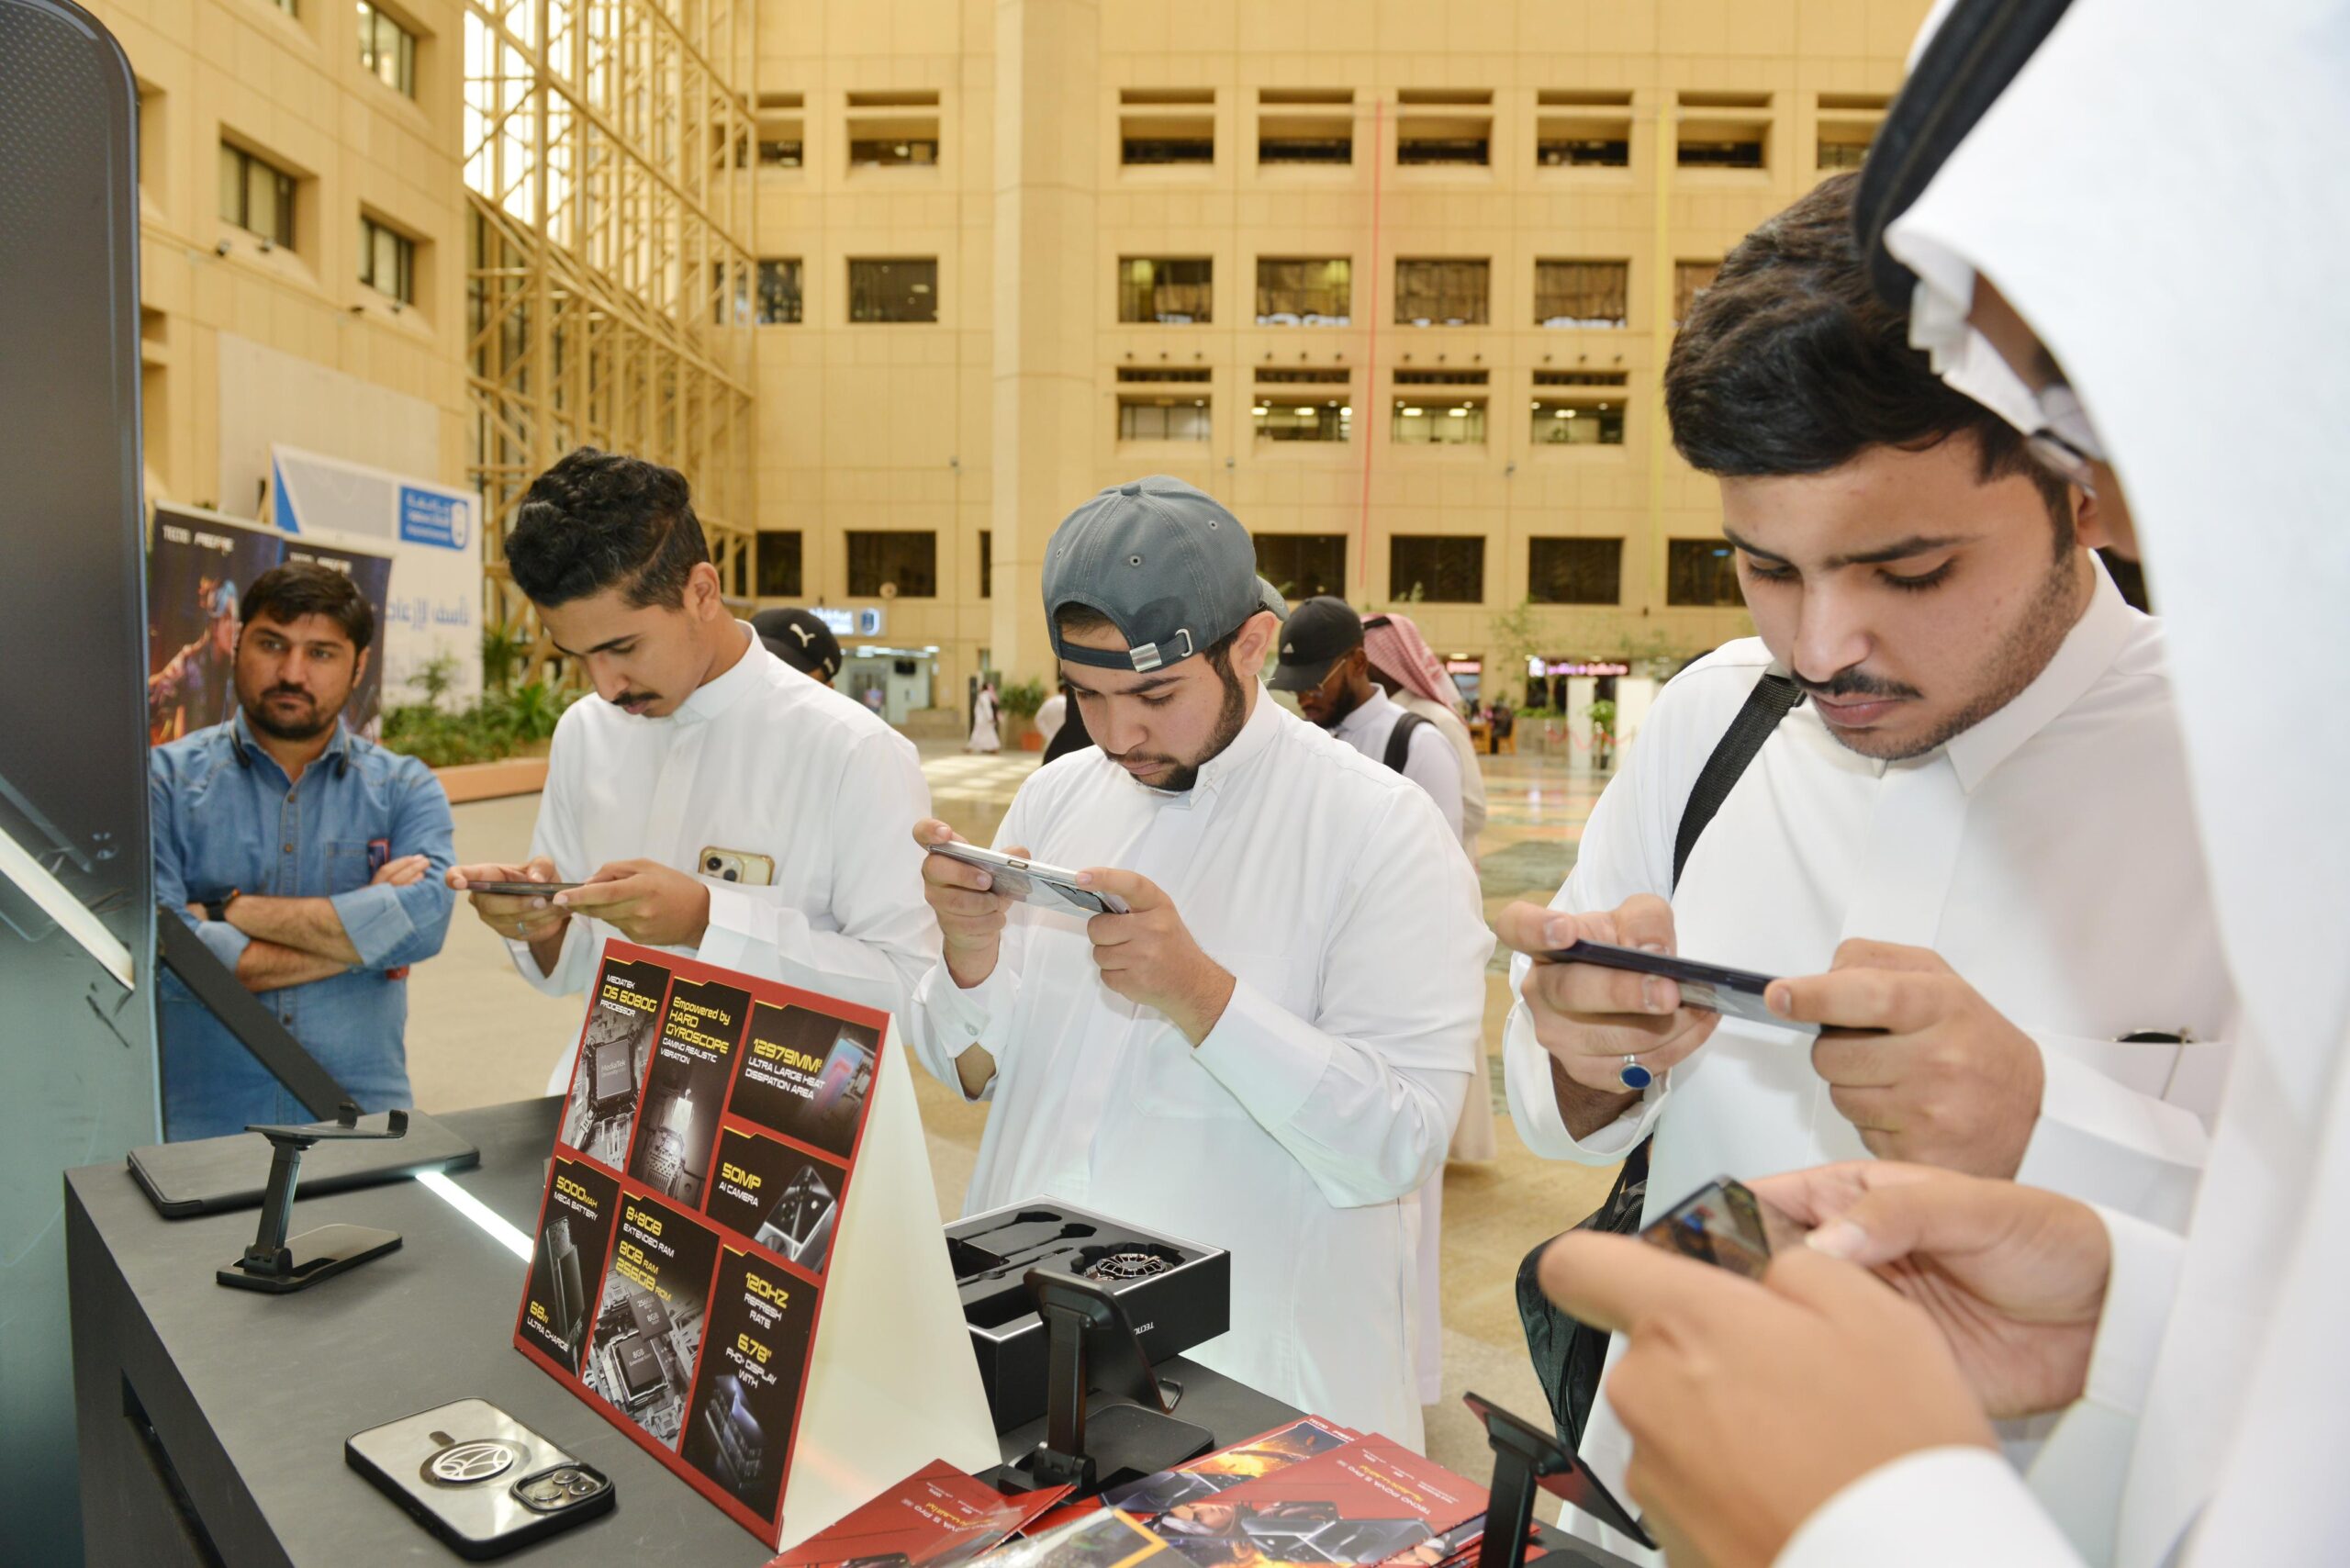 شركة TECNO تستثمر في المستقبل الواعد للشباب السعودي من خلال حدث استثنائي بجامعة الملك سعود